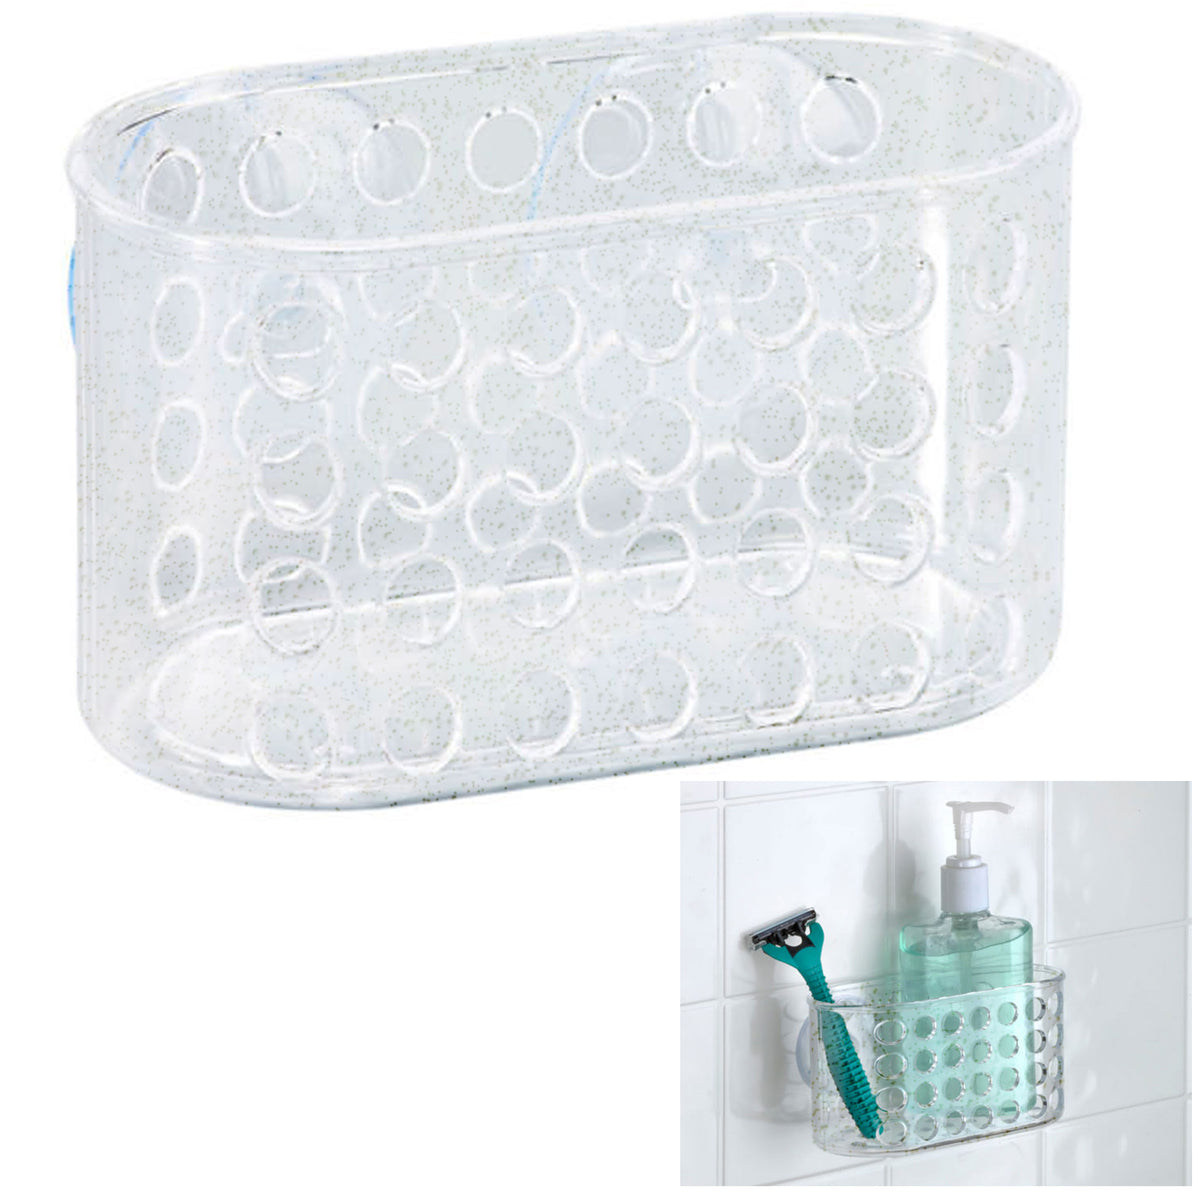 Trisonic Bathroom Caddy Shower Bath Organizer Storage Basket